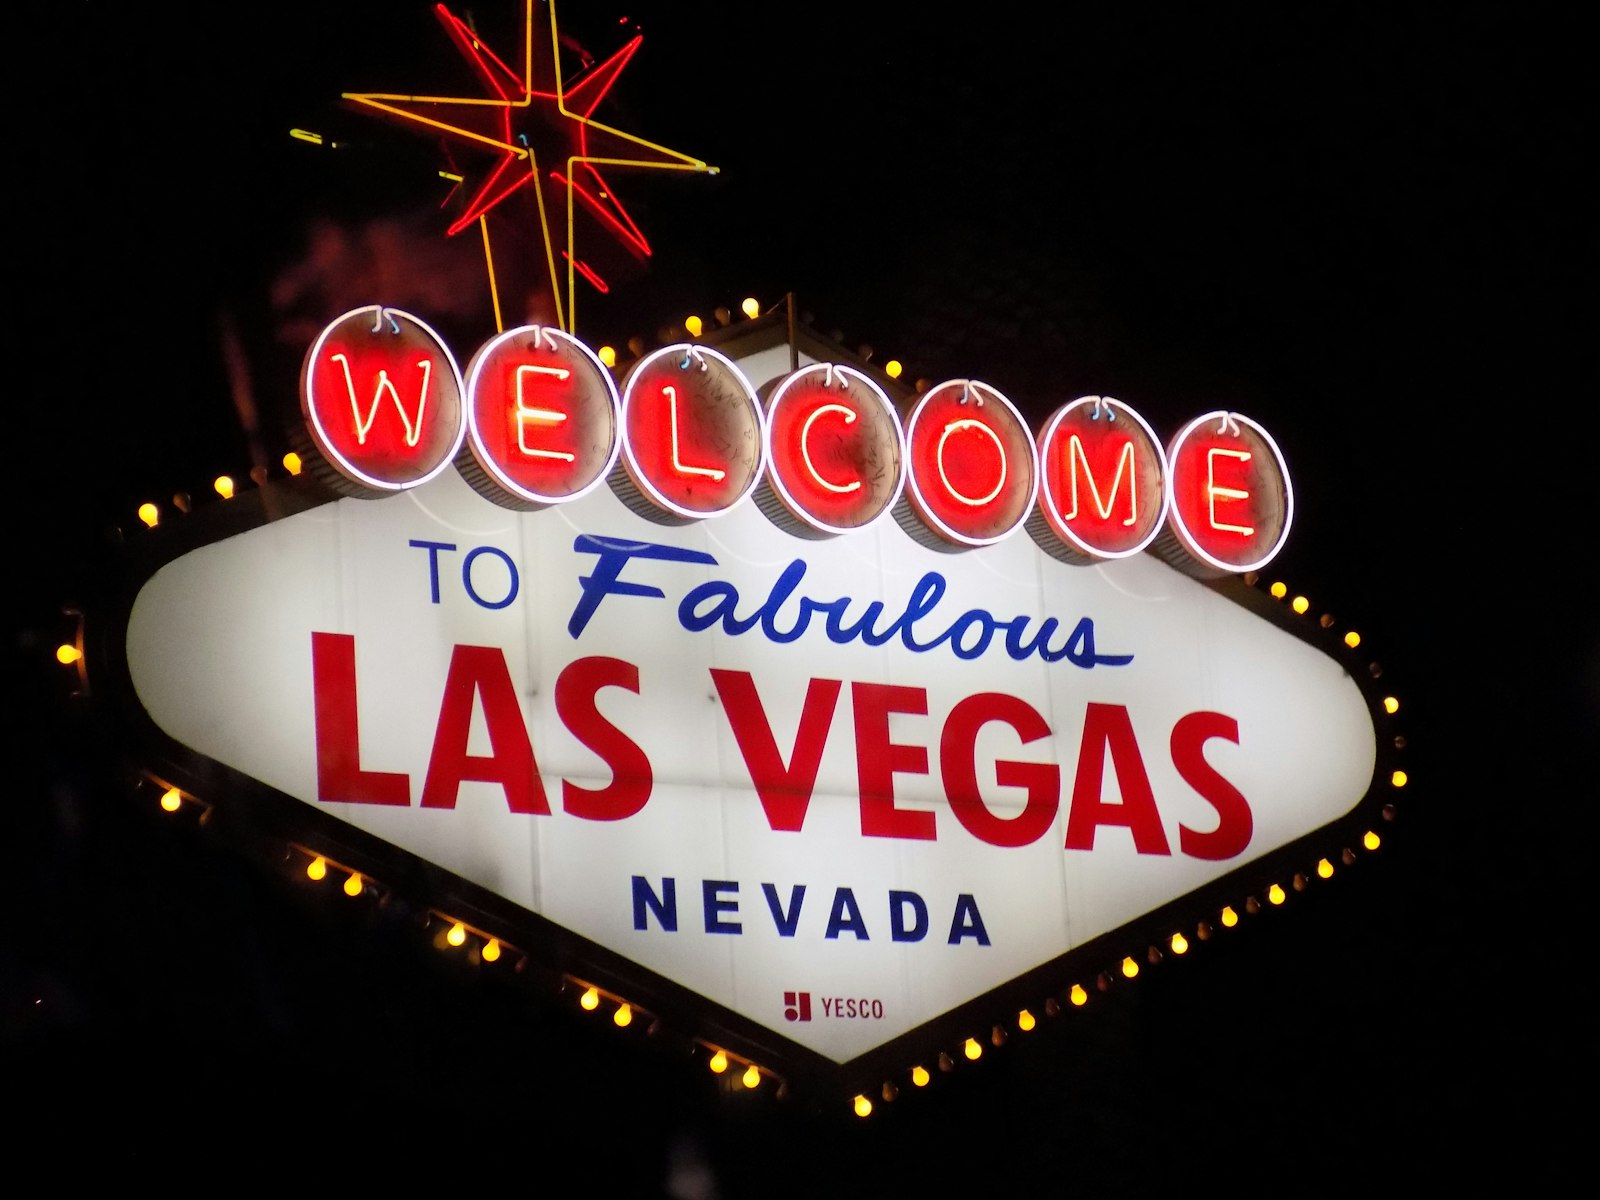 FTB: It's 5 am in Vegas